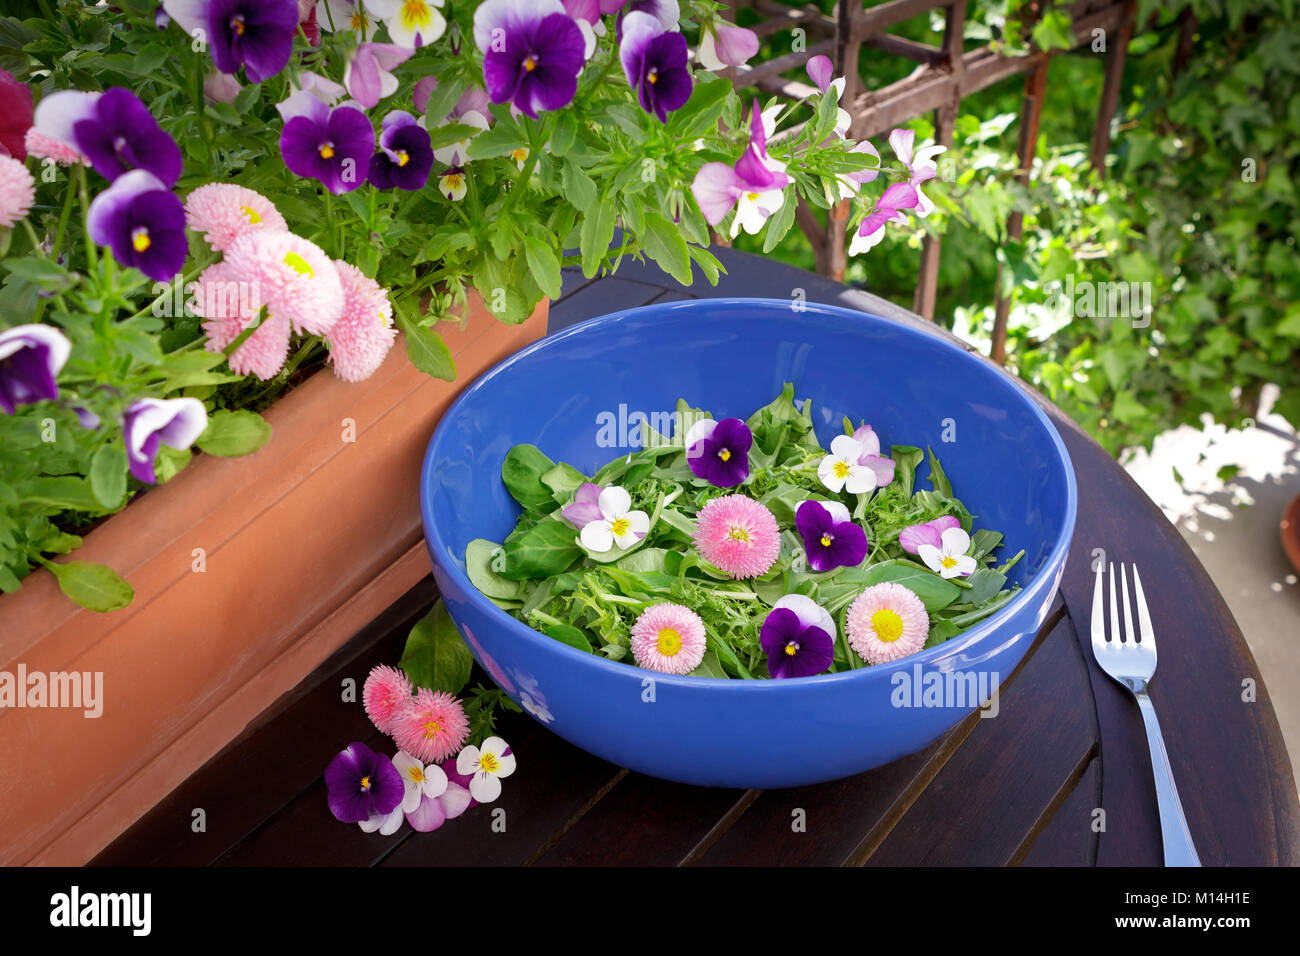 Blue insalatiera con un misto di verde le foglie di lattuga e commestibile daisy e pansy fiori al buio su un tavolo di legno all'aperto, Daisy e pansy piante in una pentola in Foto Stock